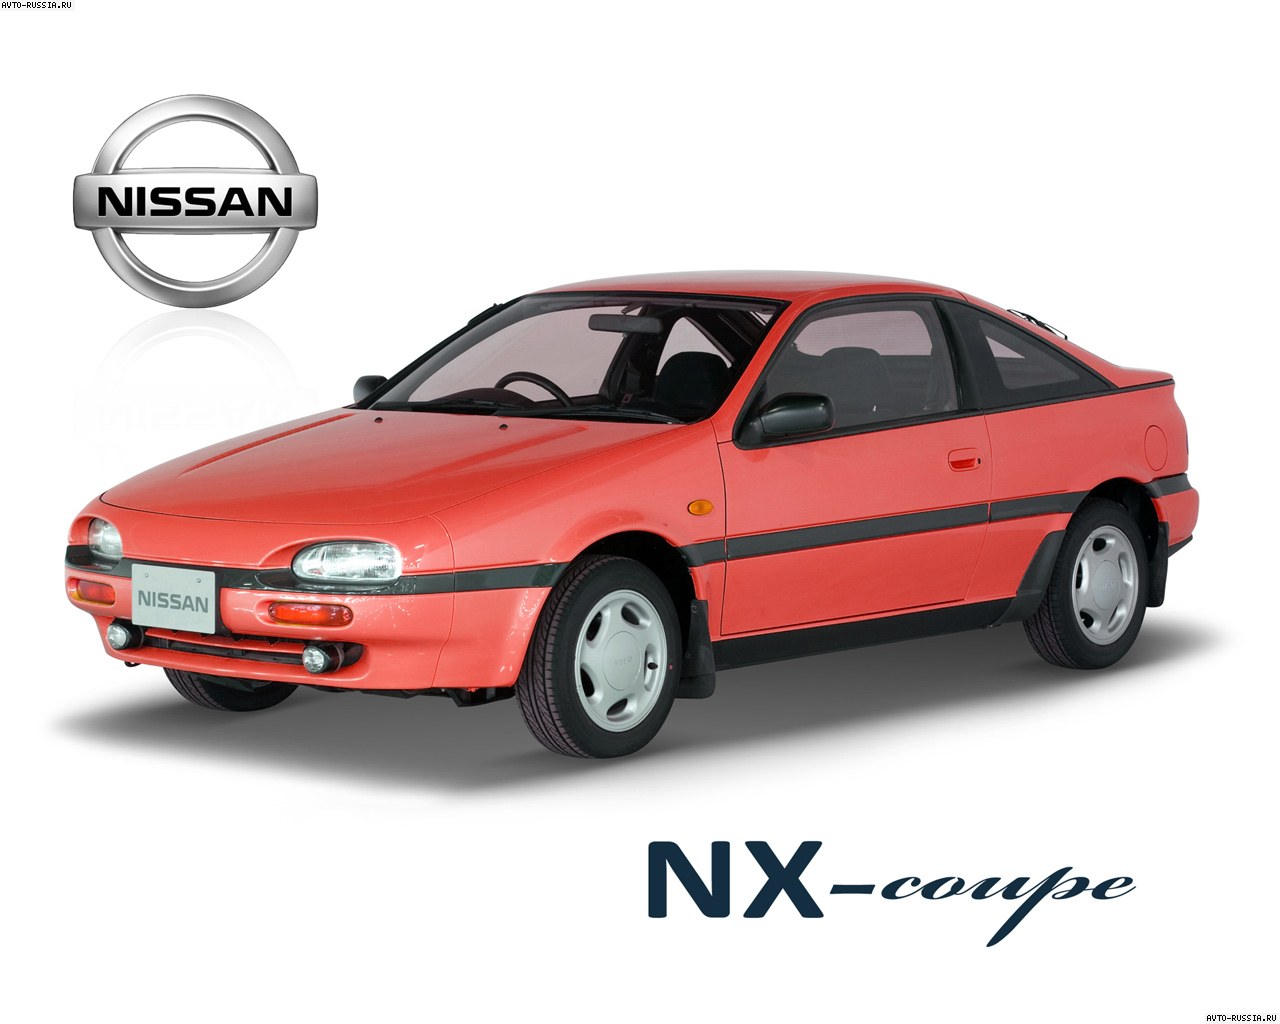 Nissan nx coupe sr18de #10